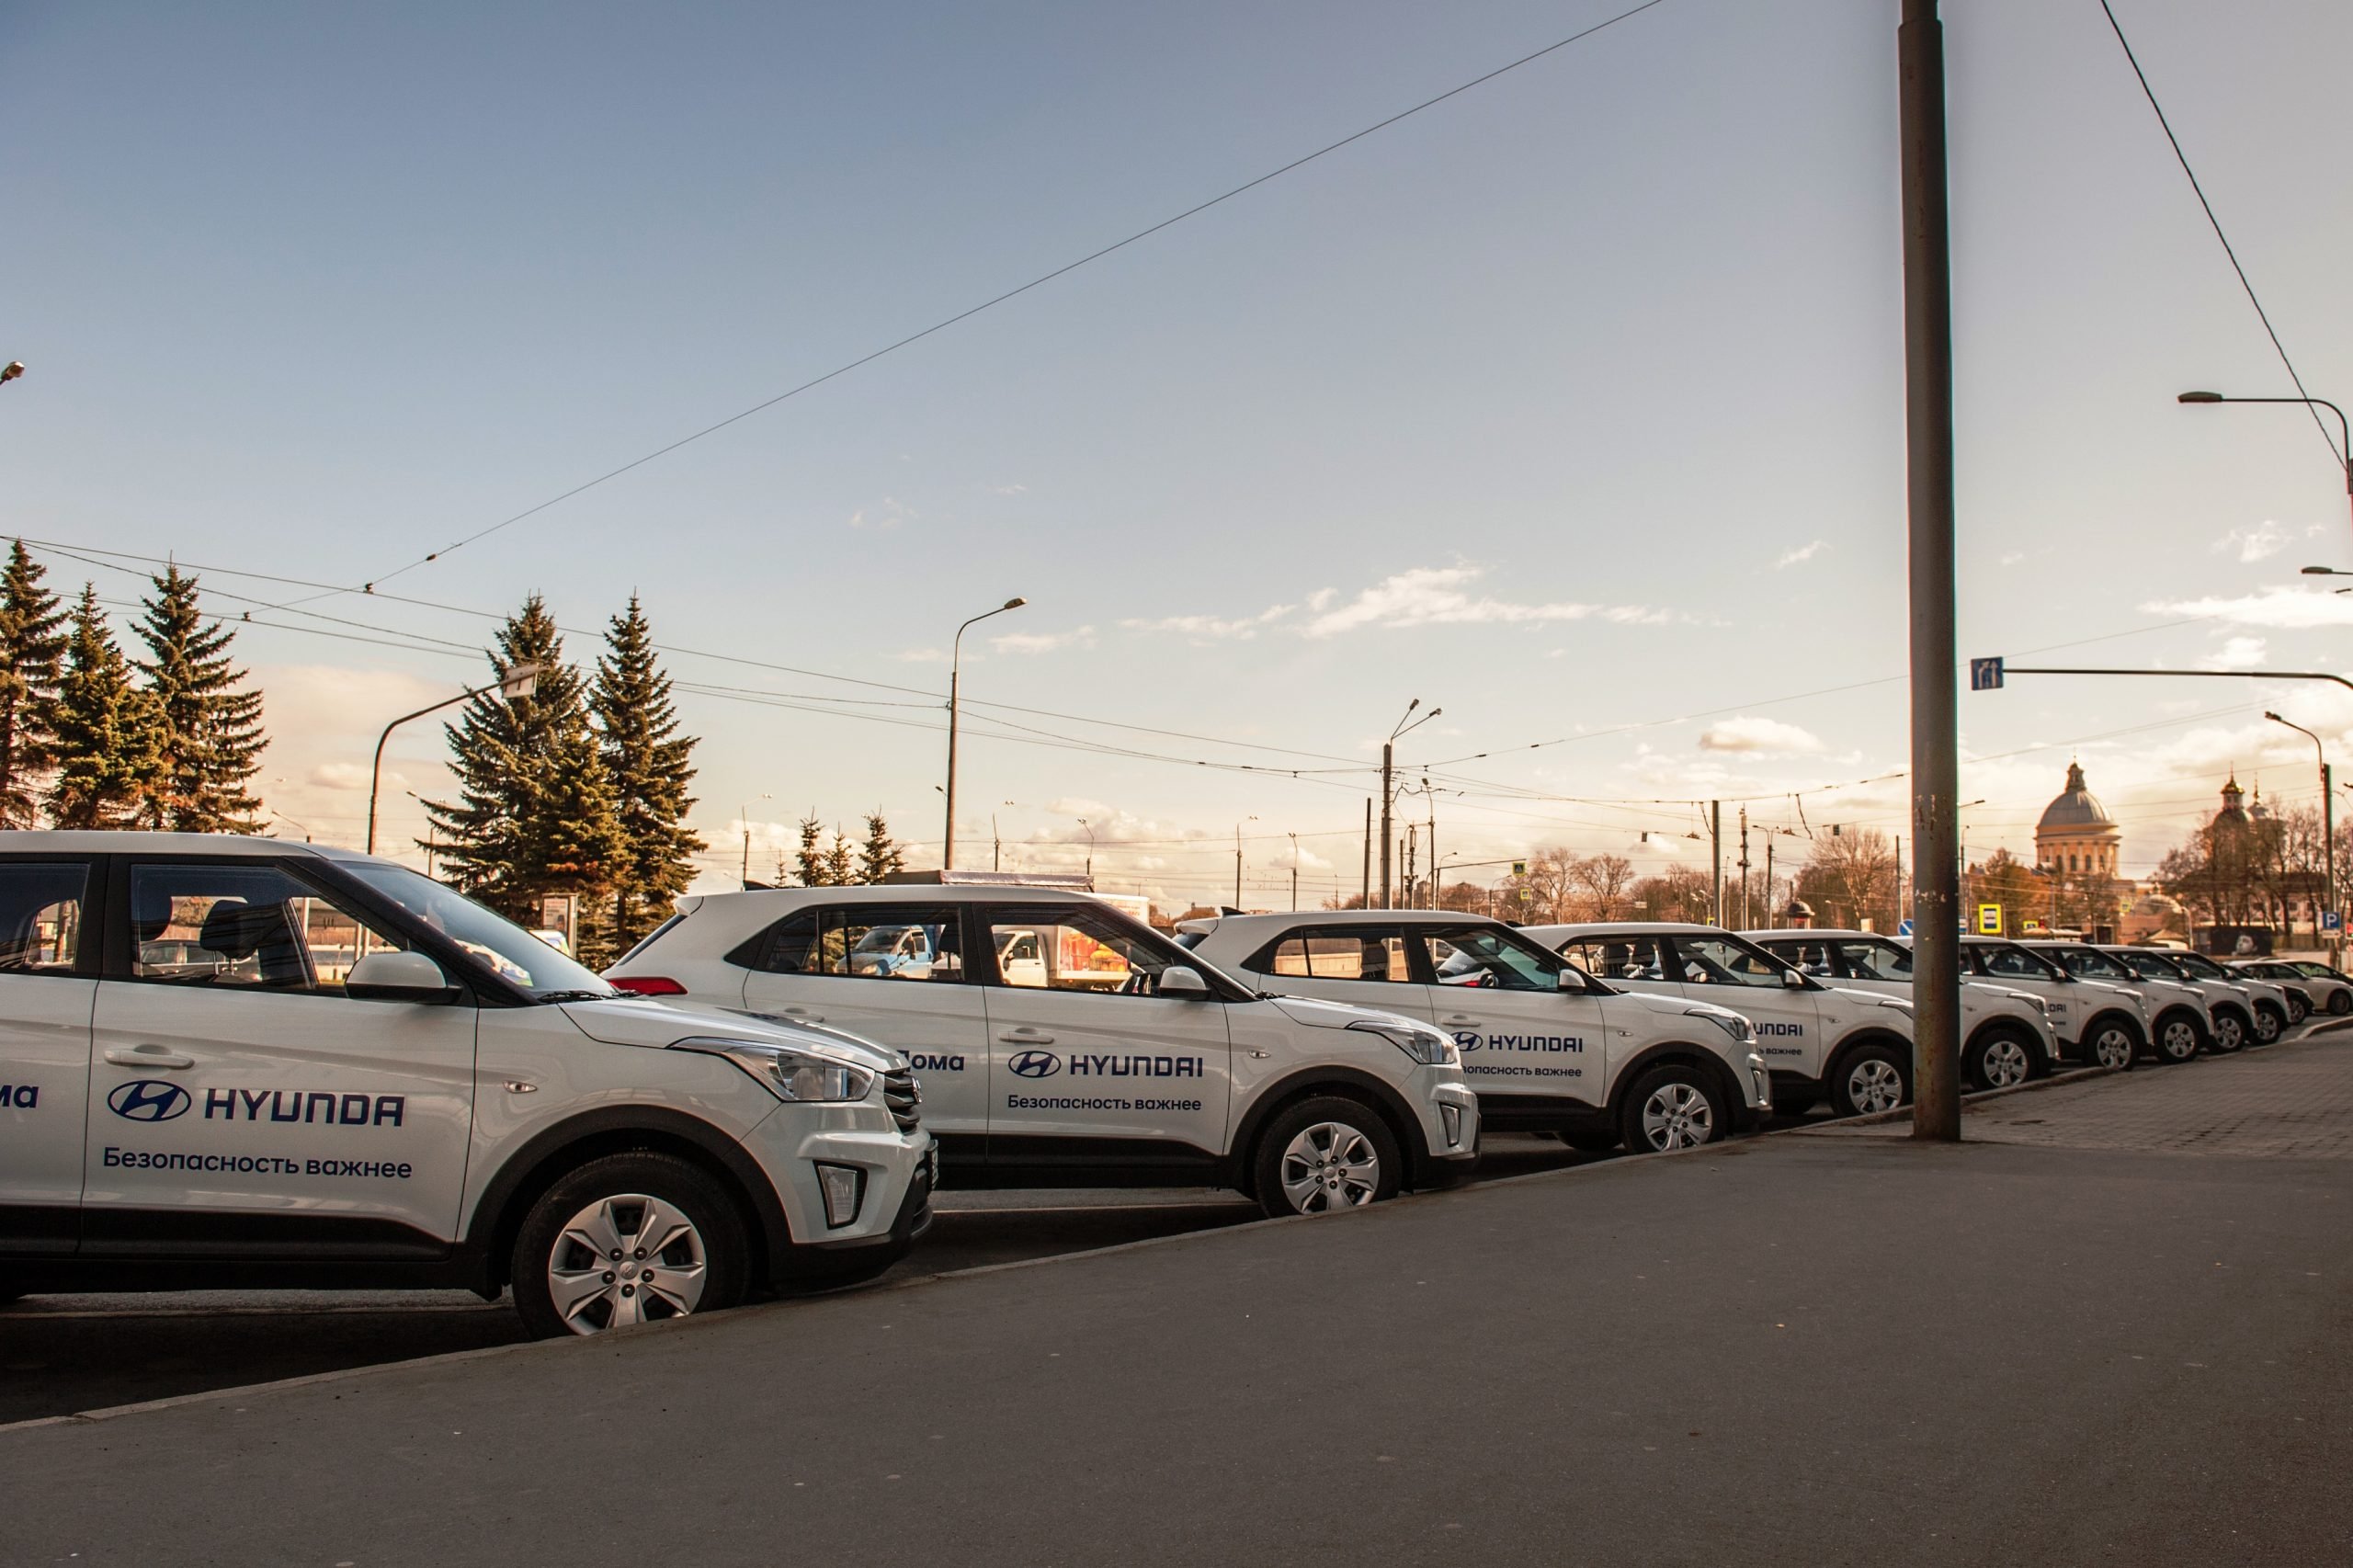 Hyundai дарит 10 000 бесплатных поездок на такси для врачей московских клиник